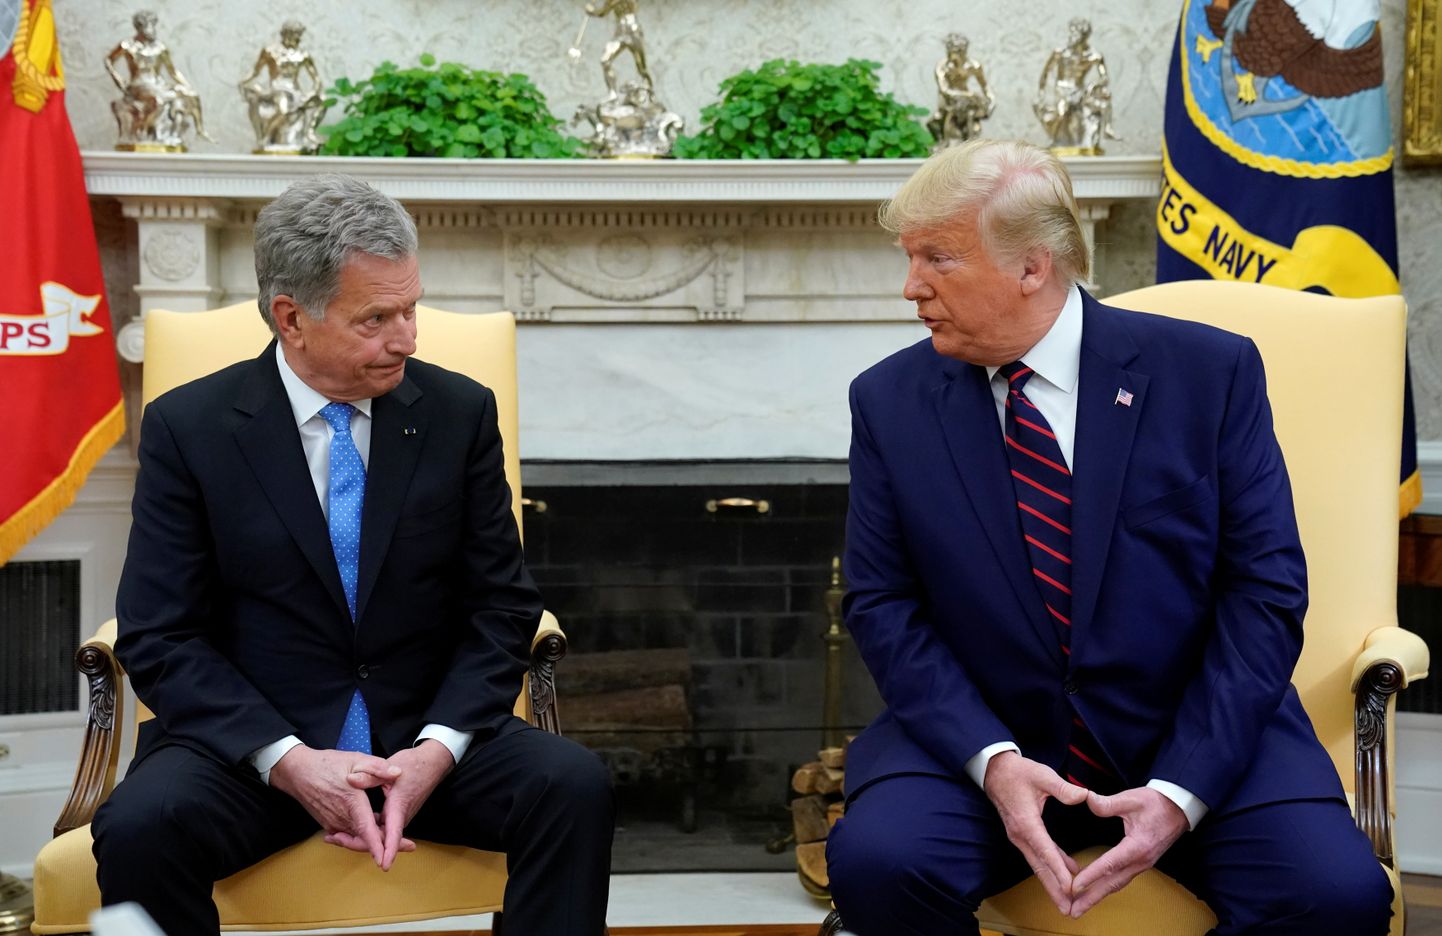 USA presidendi Donald Trumpi ja Soome presidendi Sauli Niinistö kohtumine 2. oktoobril 2019 Washingtonis Valges Majas